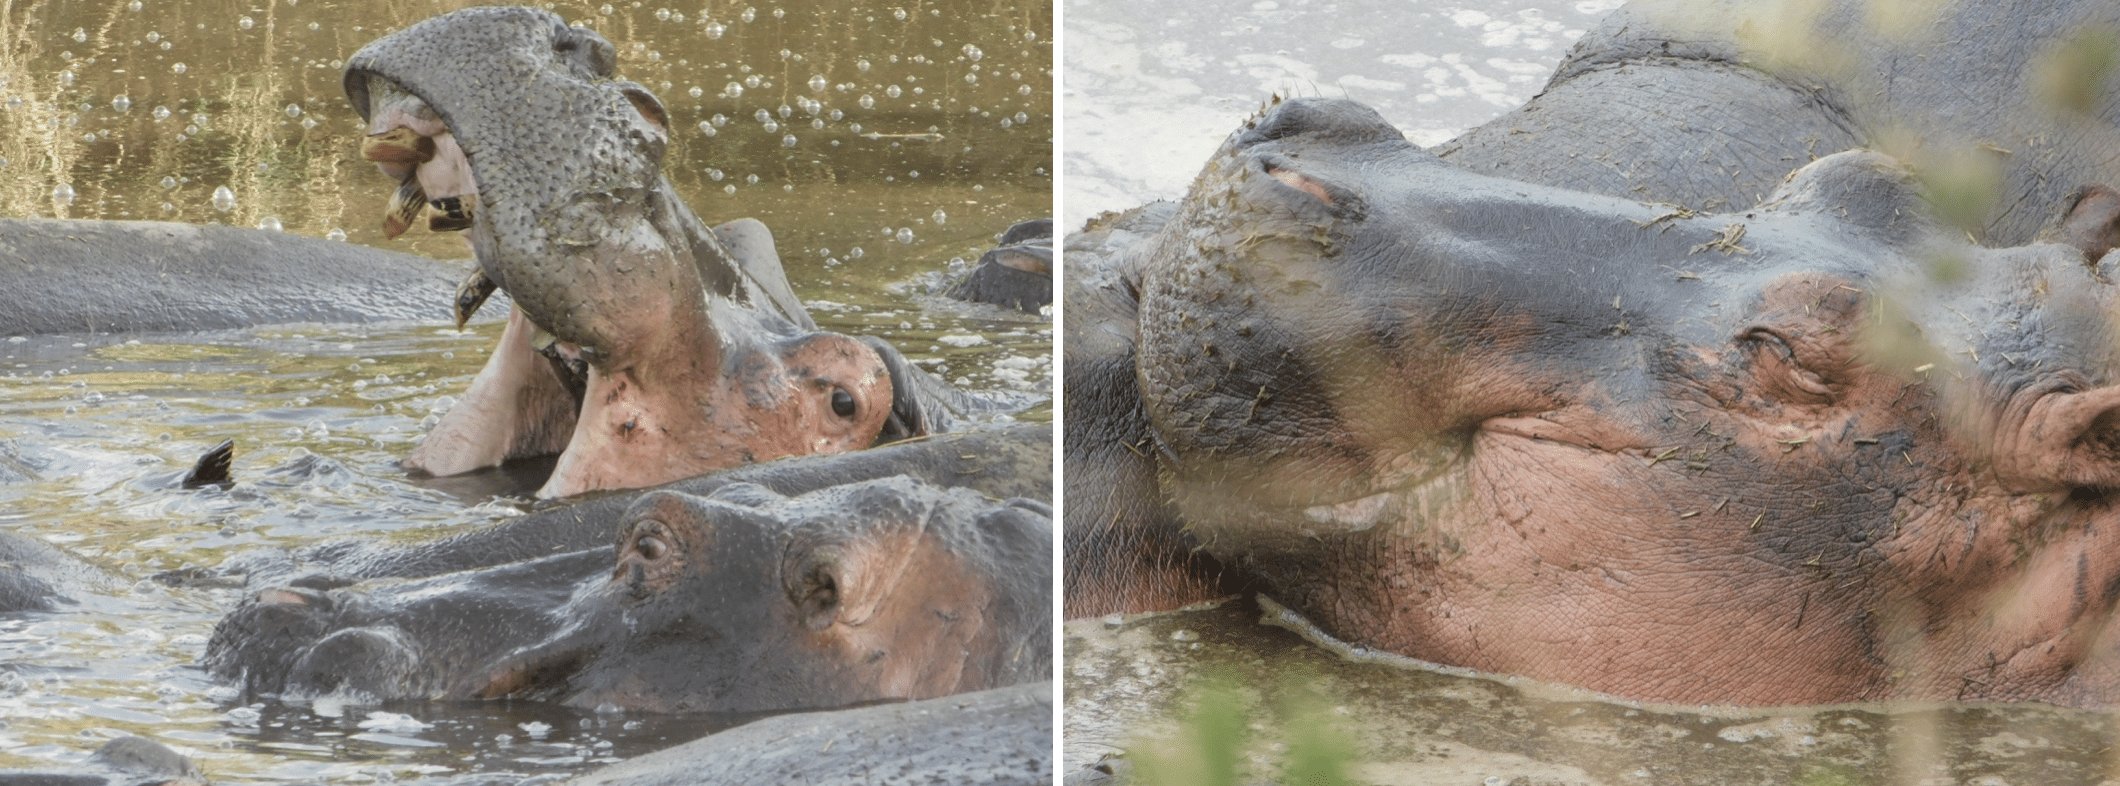 des hippopotames dans le parc du serengeti